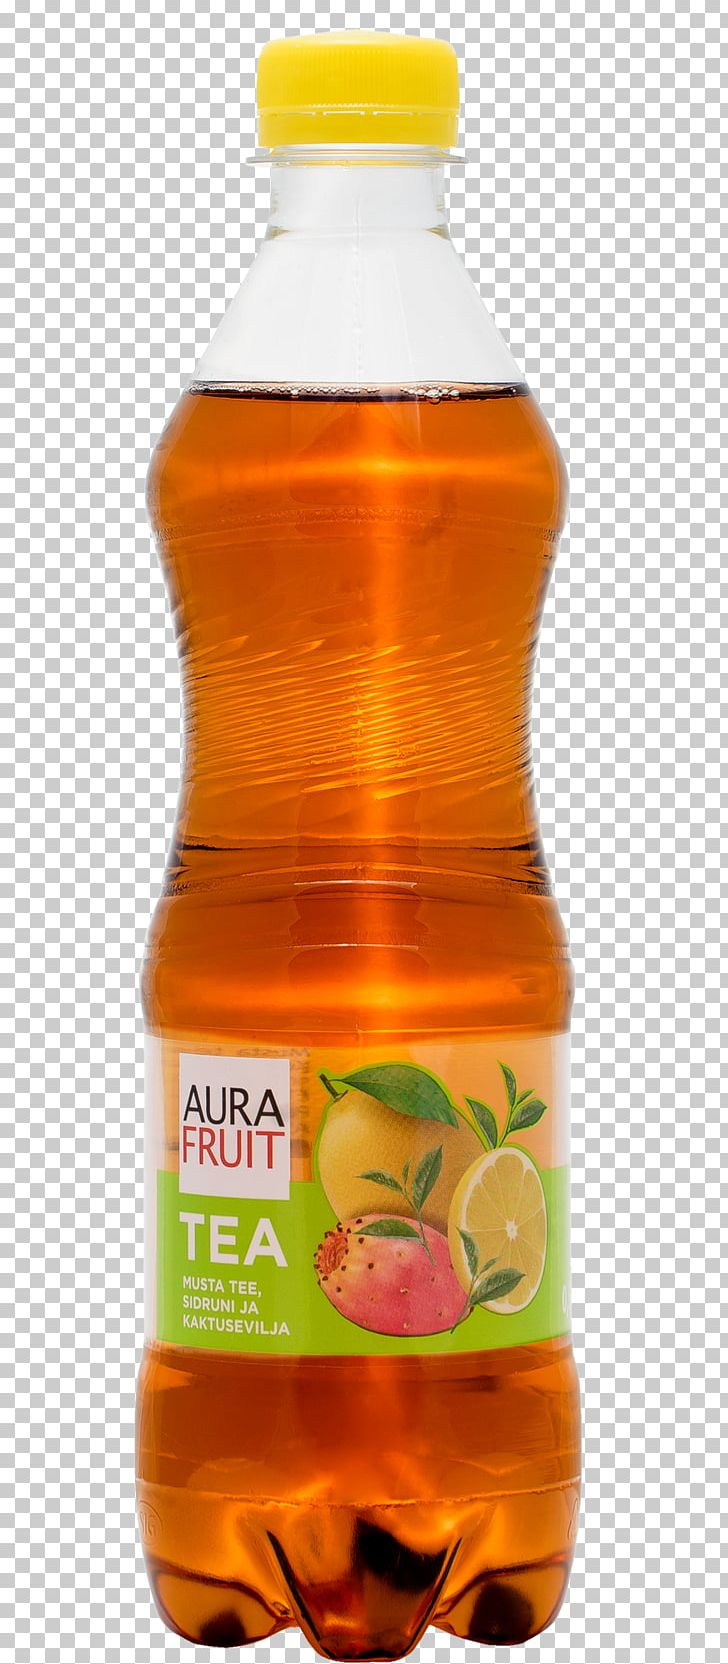 Orange Drink Fruit Tea Black Tea Lemon PNG, Clipart, Aura, Black Tea, Bottle, Cranberry, Drink Free PNG Download